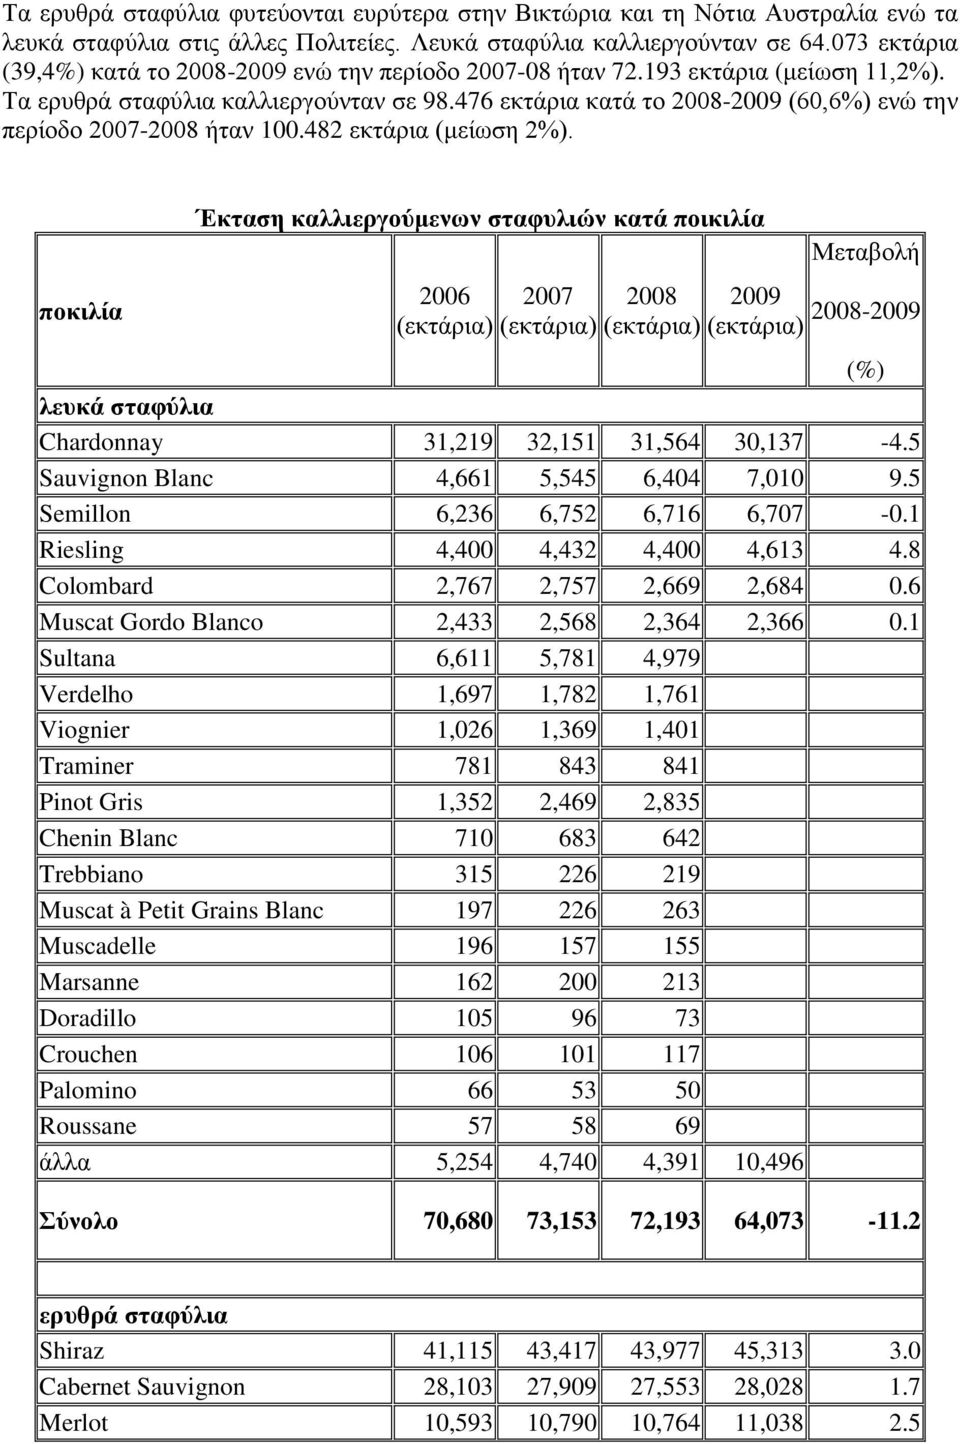 476 εθηάξηα θαηά ην 2008-2009 (60,6%) ελώ ηελ πεξίνδν 2007-2008 ήηαλ 100.482 εθηάξηα (κείσζε 2%).